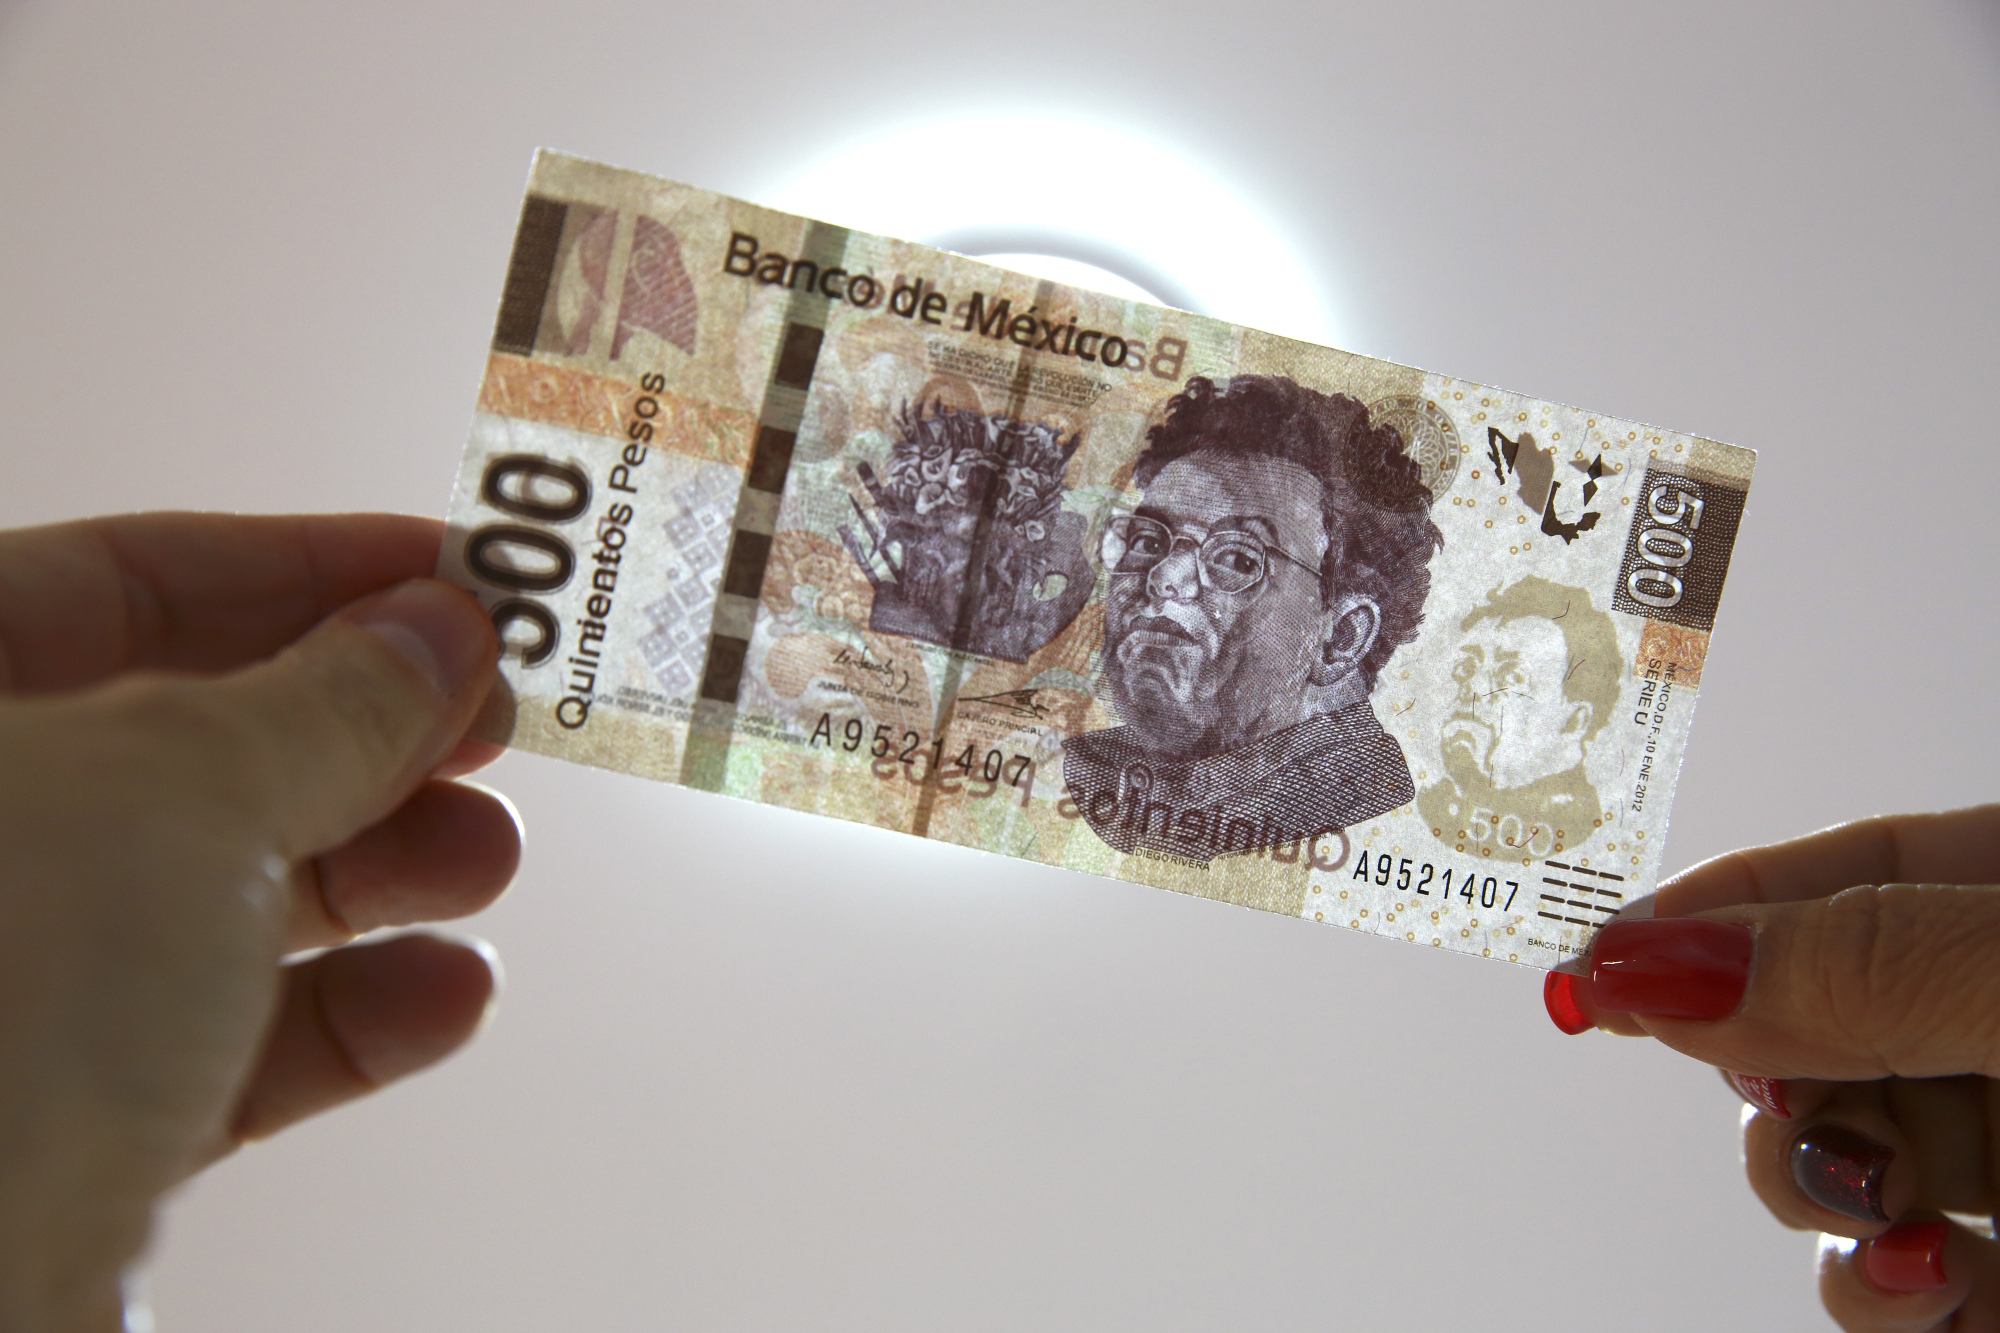 A Mexican five hundred pesos bill.